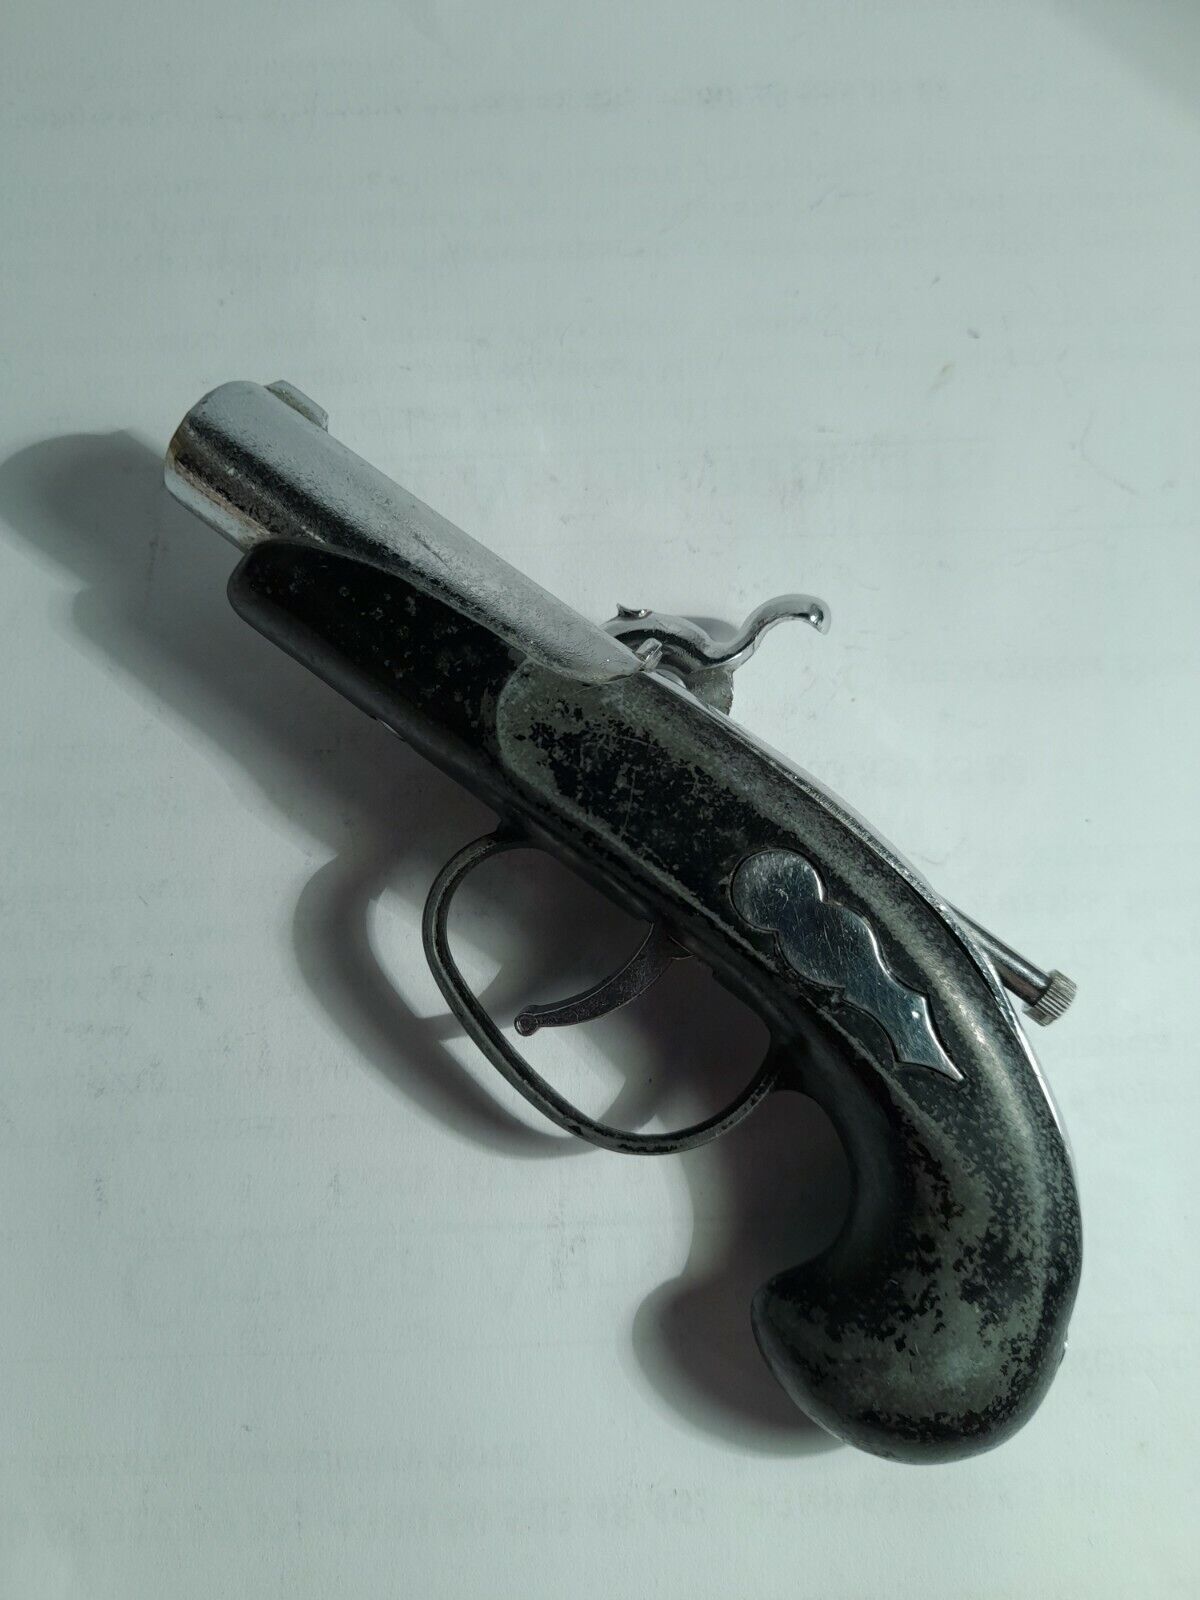 Vintage Gasoline Lighter Souvenirs Dueling Pistol Works Well Rare